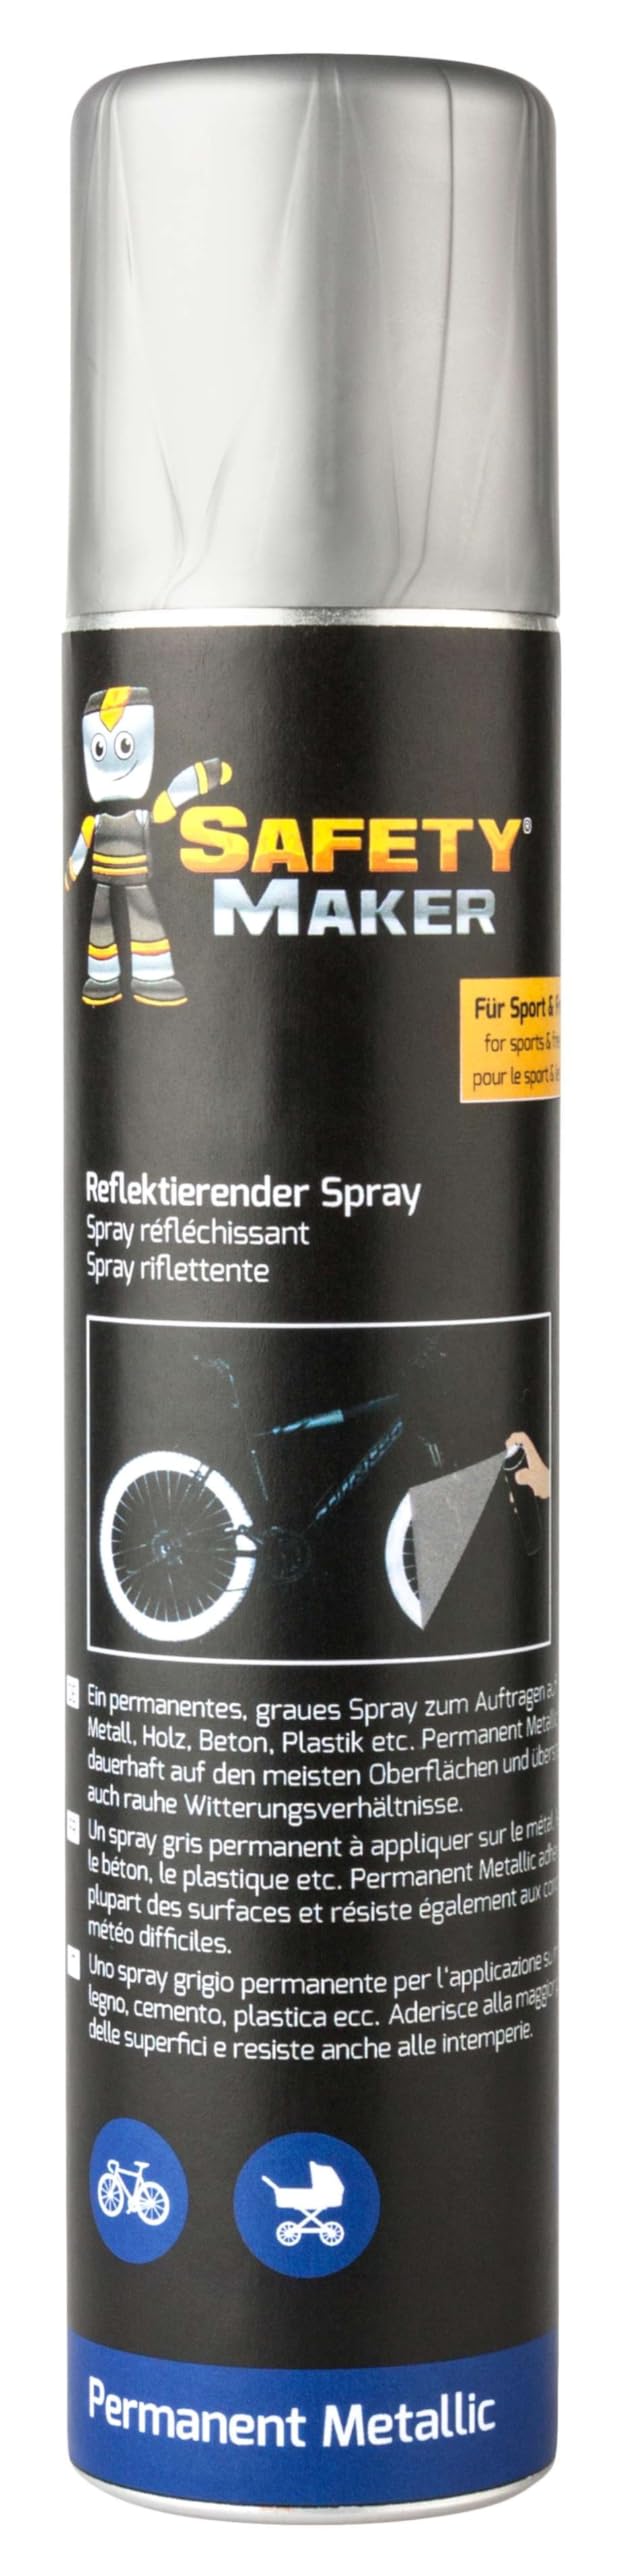 Safety Maker Reflektorspray Permanent Metallic 200 ml von Walser